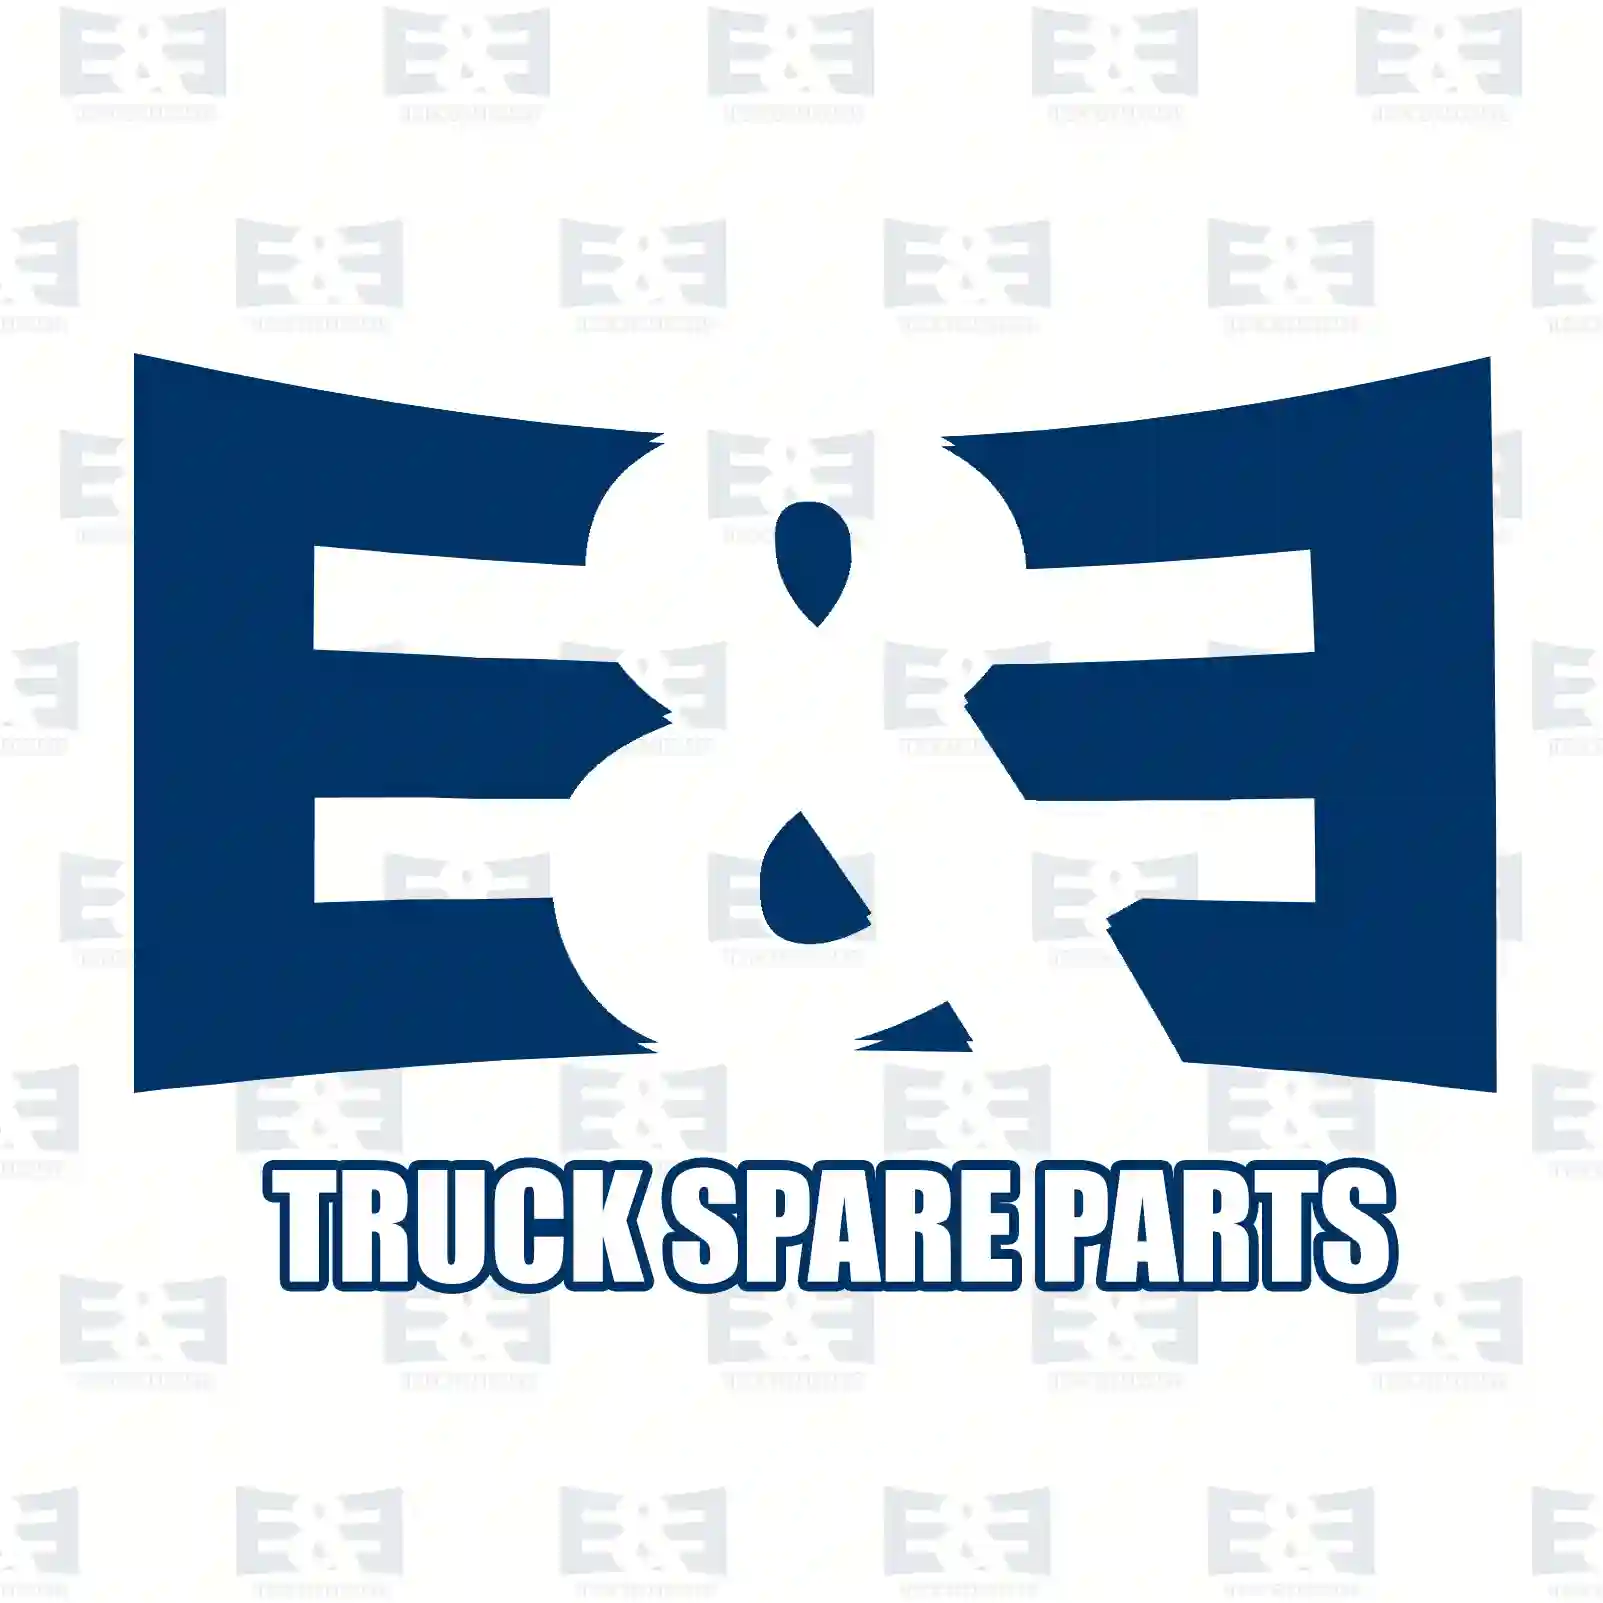 Brake disc, 2E2295857, 6694210512, 6694210712, , , , , , , , ||  2E2295857 E&E Truck Spare Parts | Truck Spare Parts, Auotomotive Spare Parts Brake disc, 2E2295857, 6694210512, 6694210712, , , , , , , , ||  2E2295857 E&E Truck Spare Parts | Truck Spare Parts, Auotomotive Spare Parts